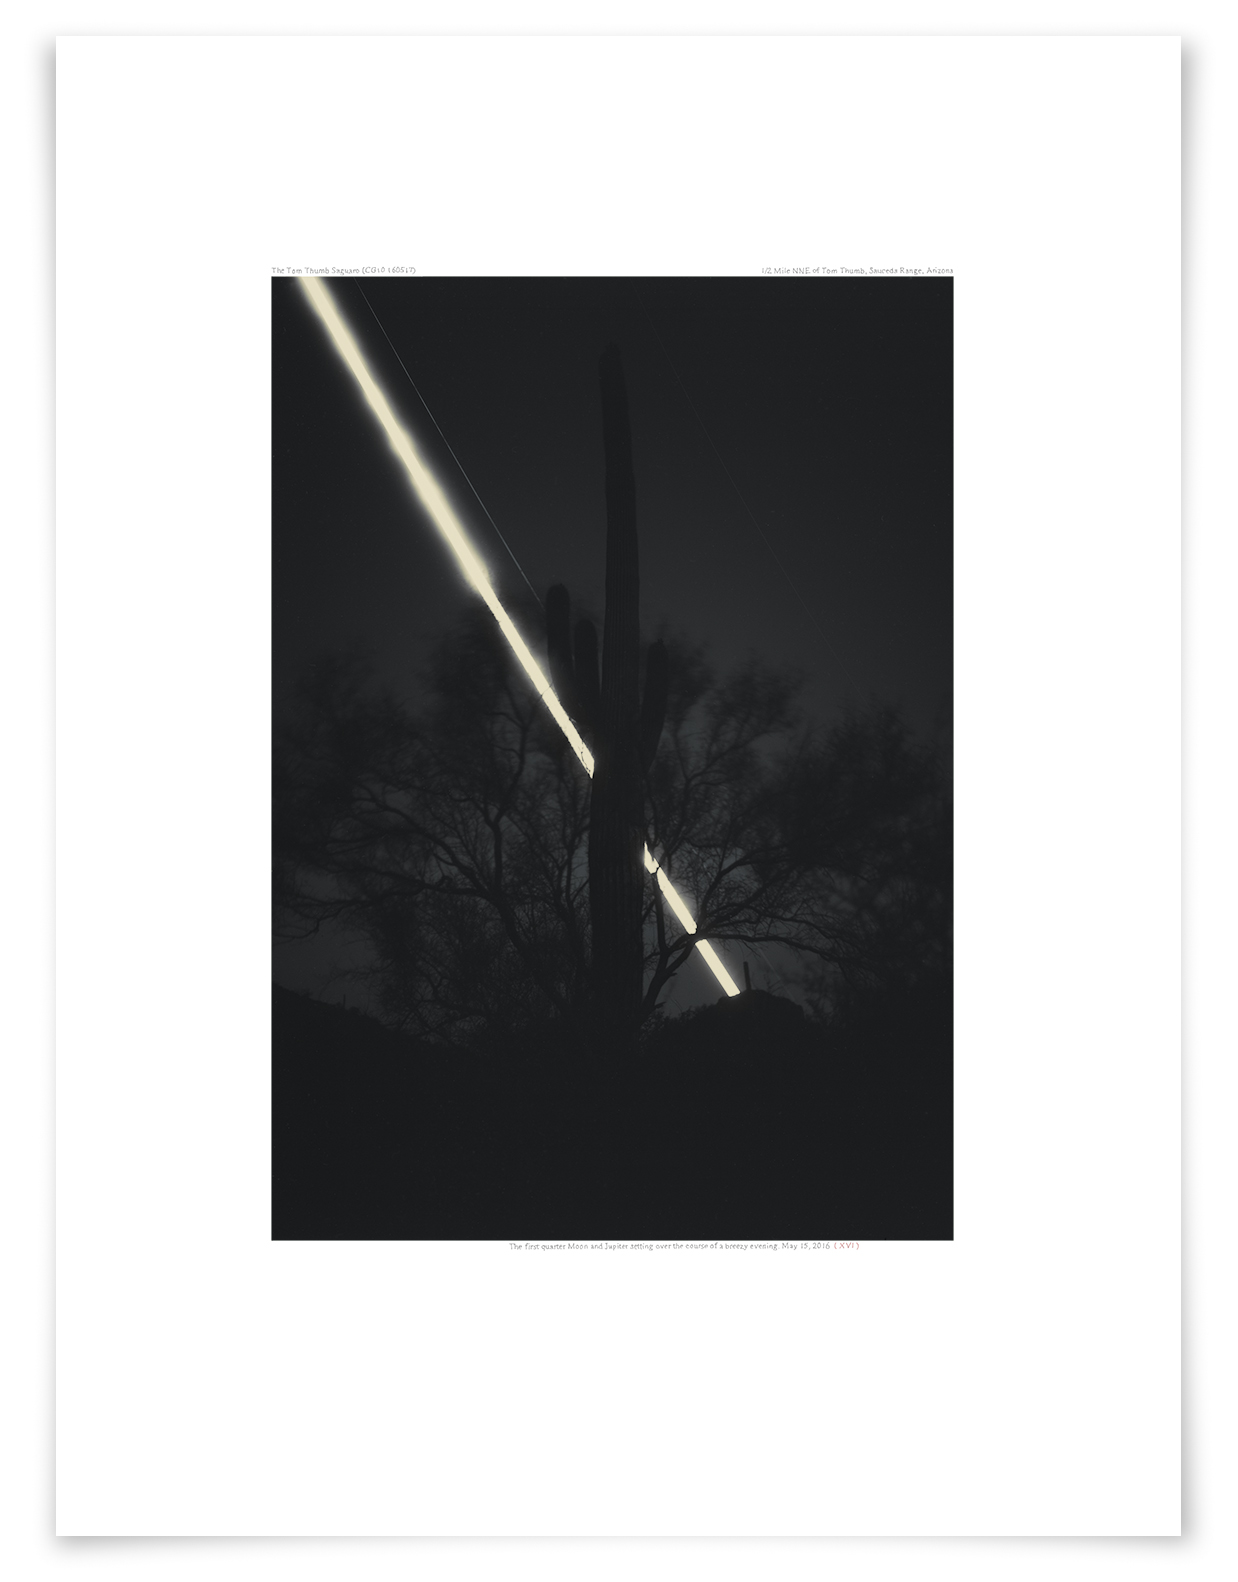   The Tom Thumb Saguaro (CG10 160515)   24 x 18 in (61 x 46 cm)                      